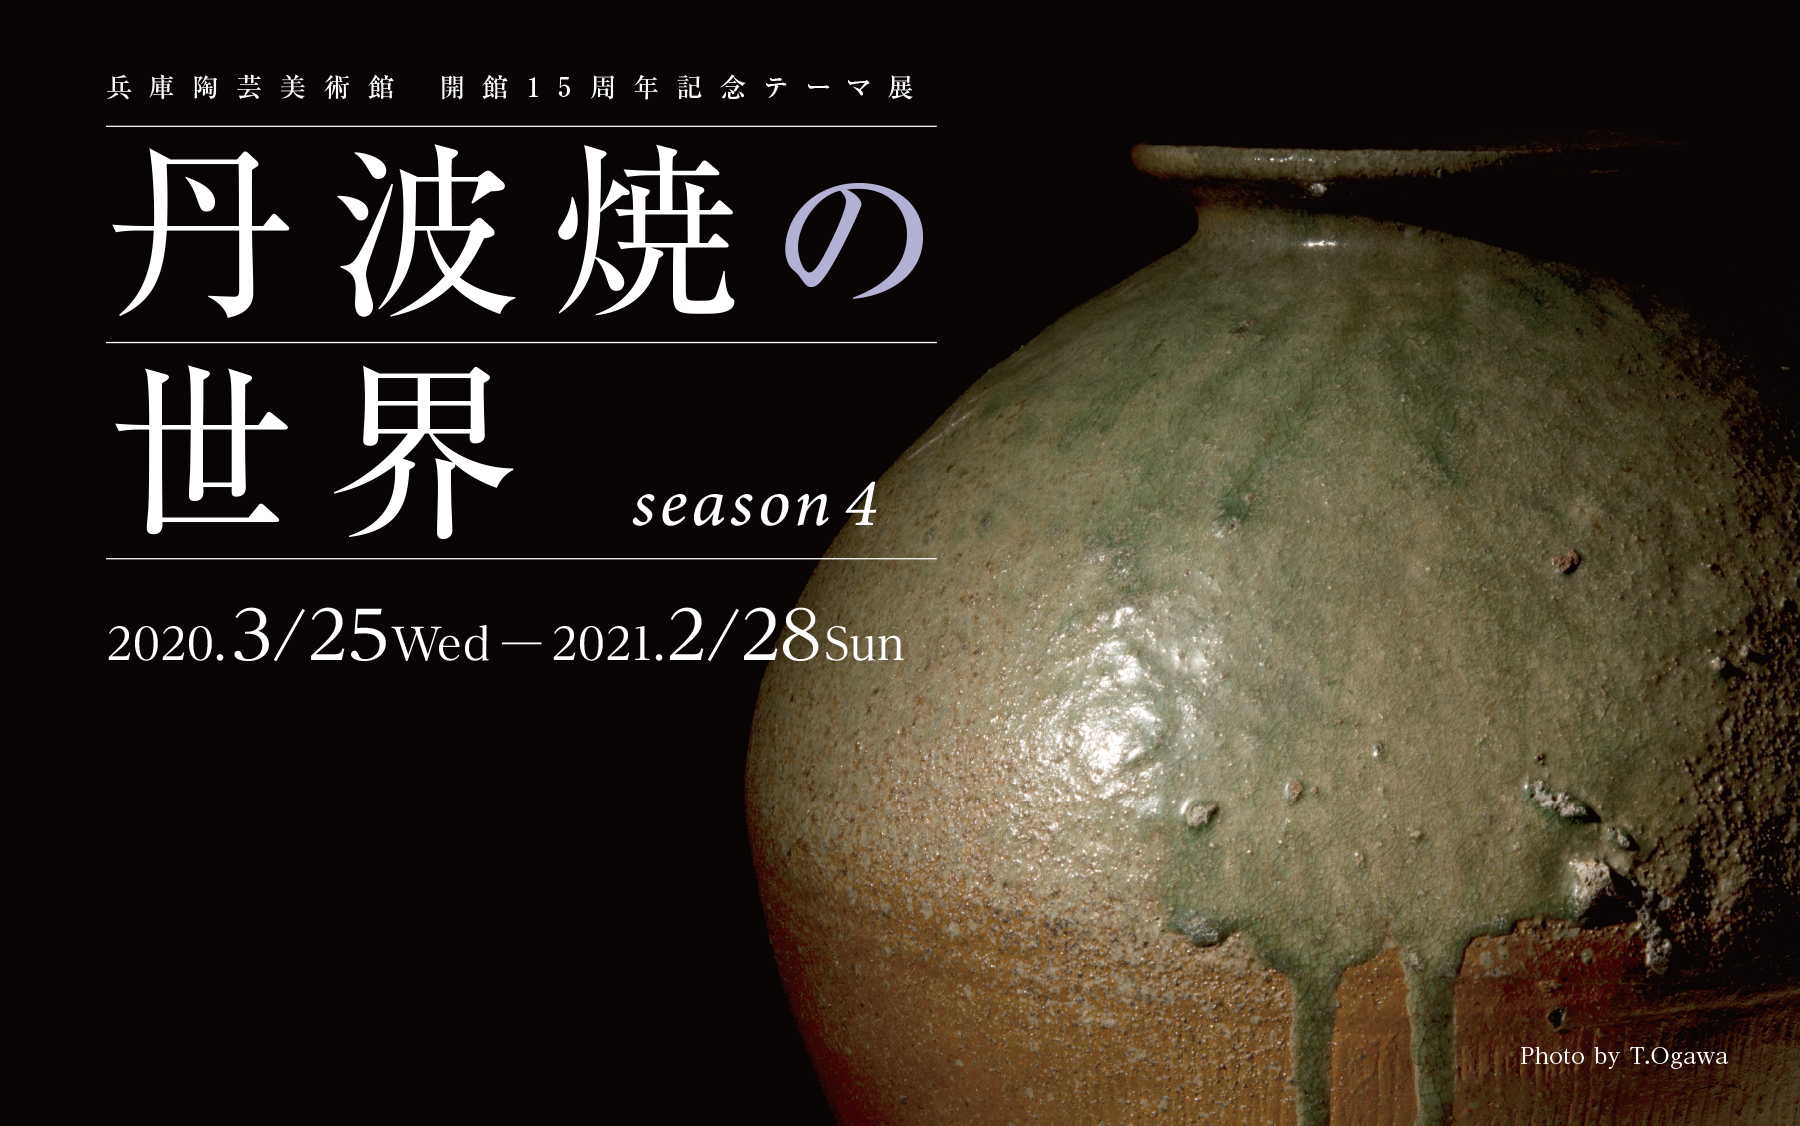 丹波焼の世界 season4 - 兵庫陶芸美術館 The Museum of Ceramic Art, Hyogo